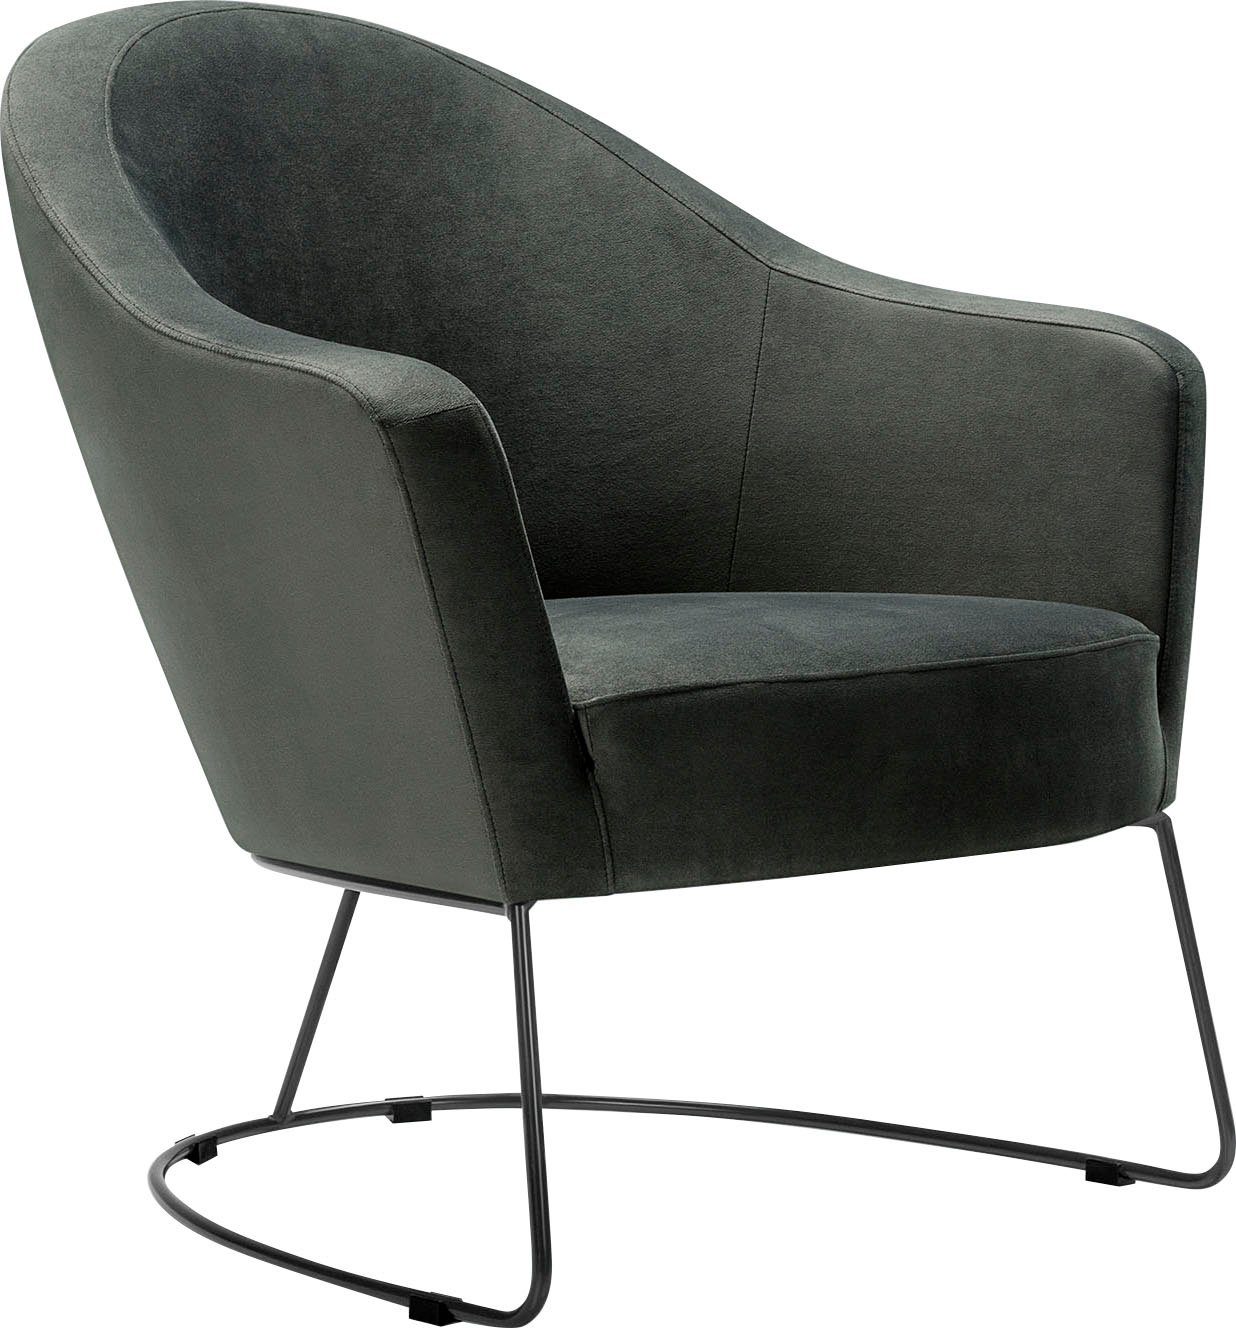 Formschaum für Loungesessel luftiges Sitzgefühl in LOVI Metallrahmen Grape, grau, Sitzfläche